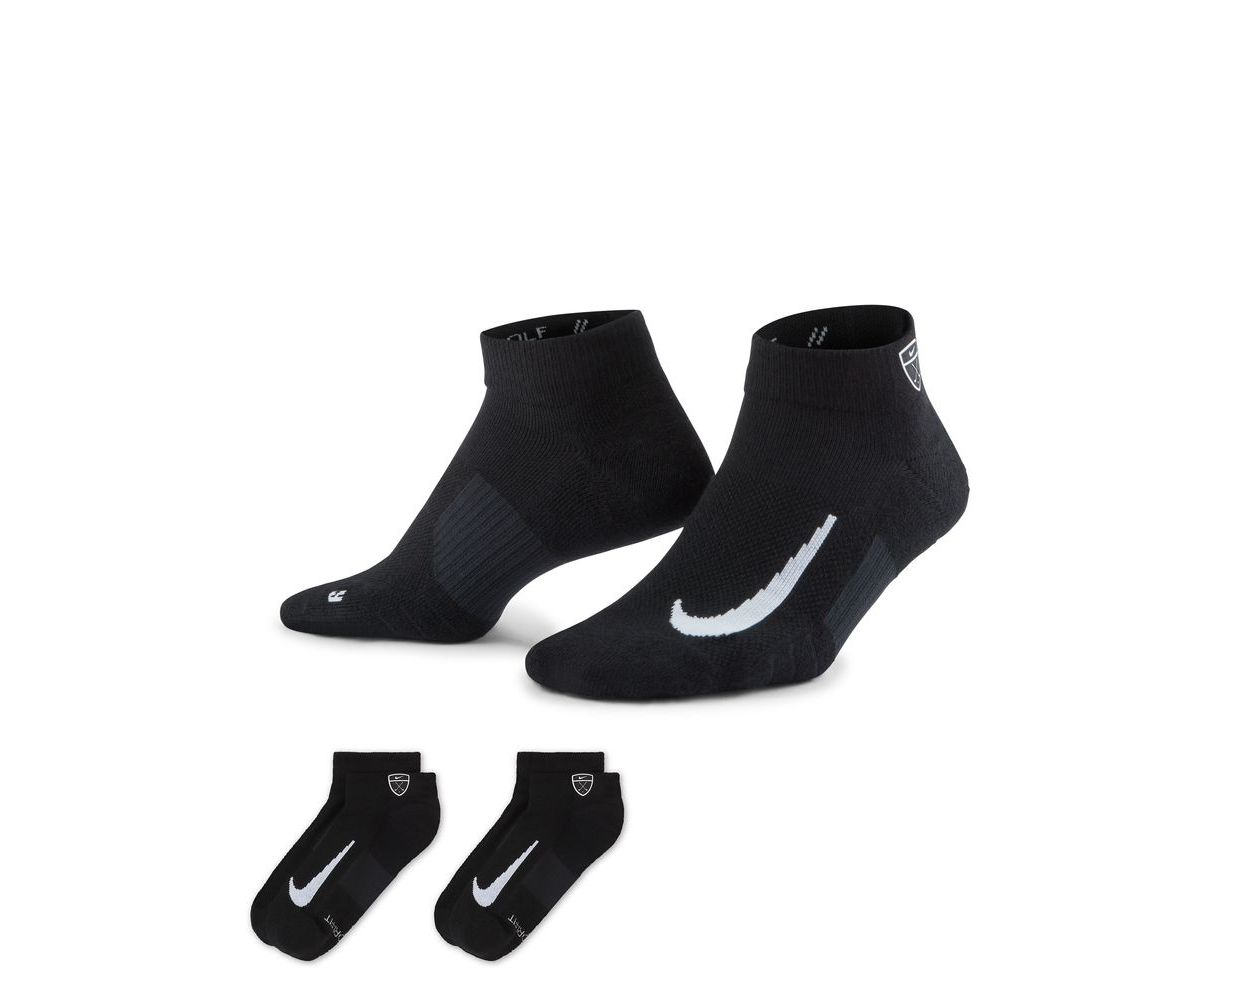 Nike Men's Multiplier Low Quarter Socks - 2 Pack